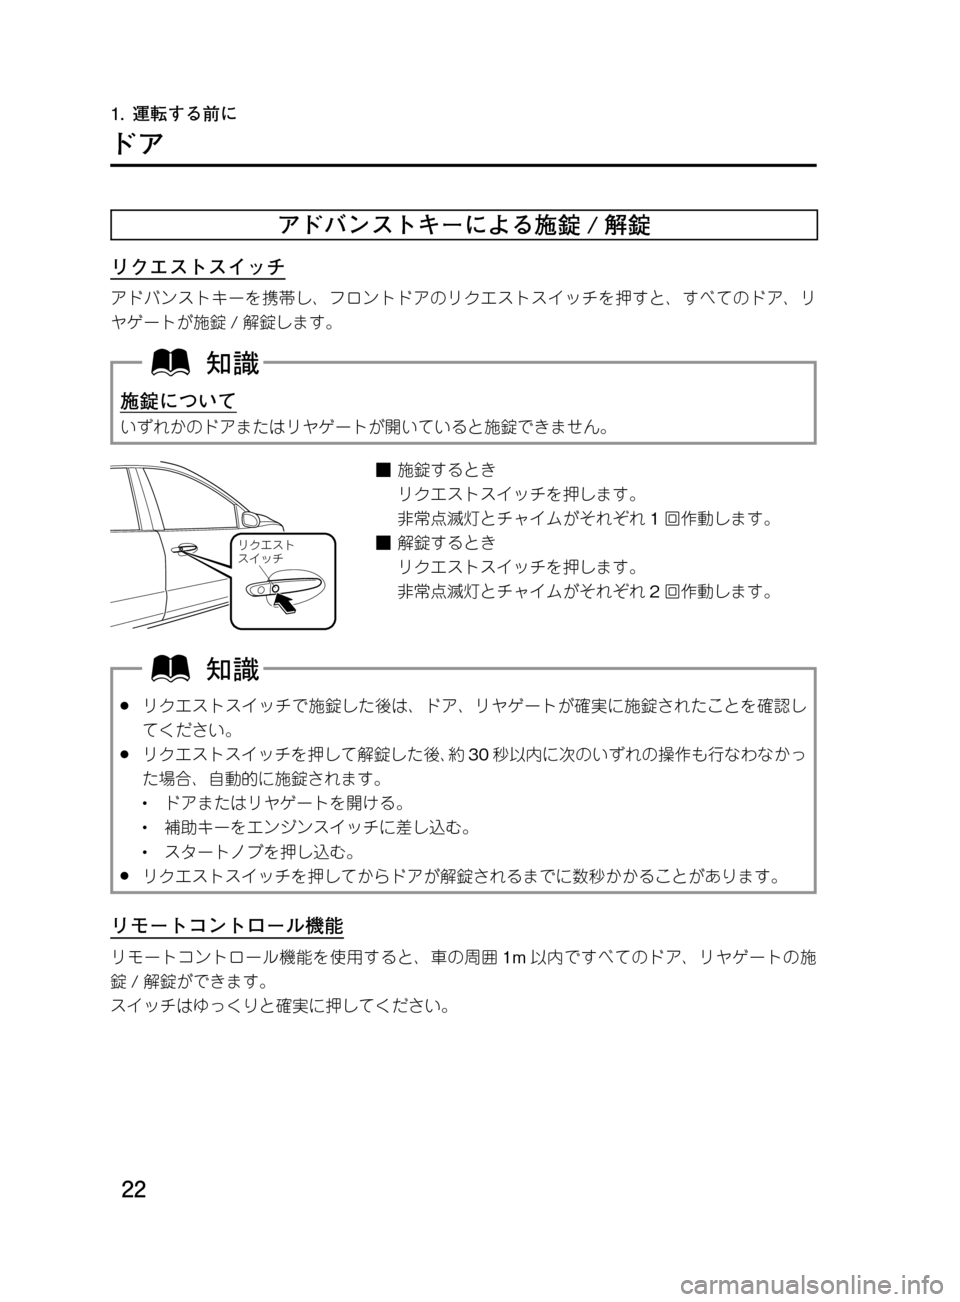 MAZDA MODEL DEMIO 2011  デミオ｜取扱説明書 (in Japanese) ��
��P�S�N��/�P���% 